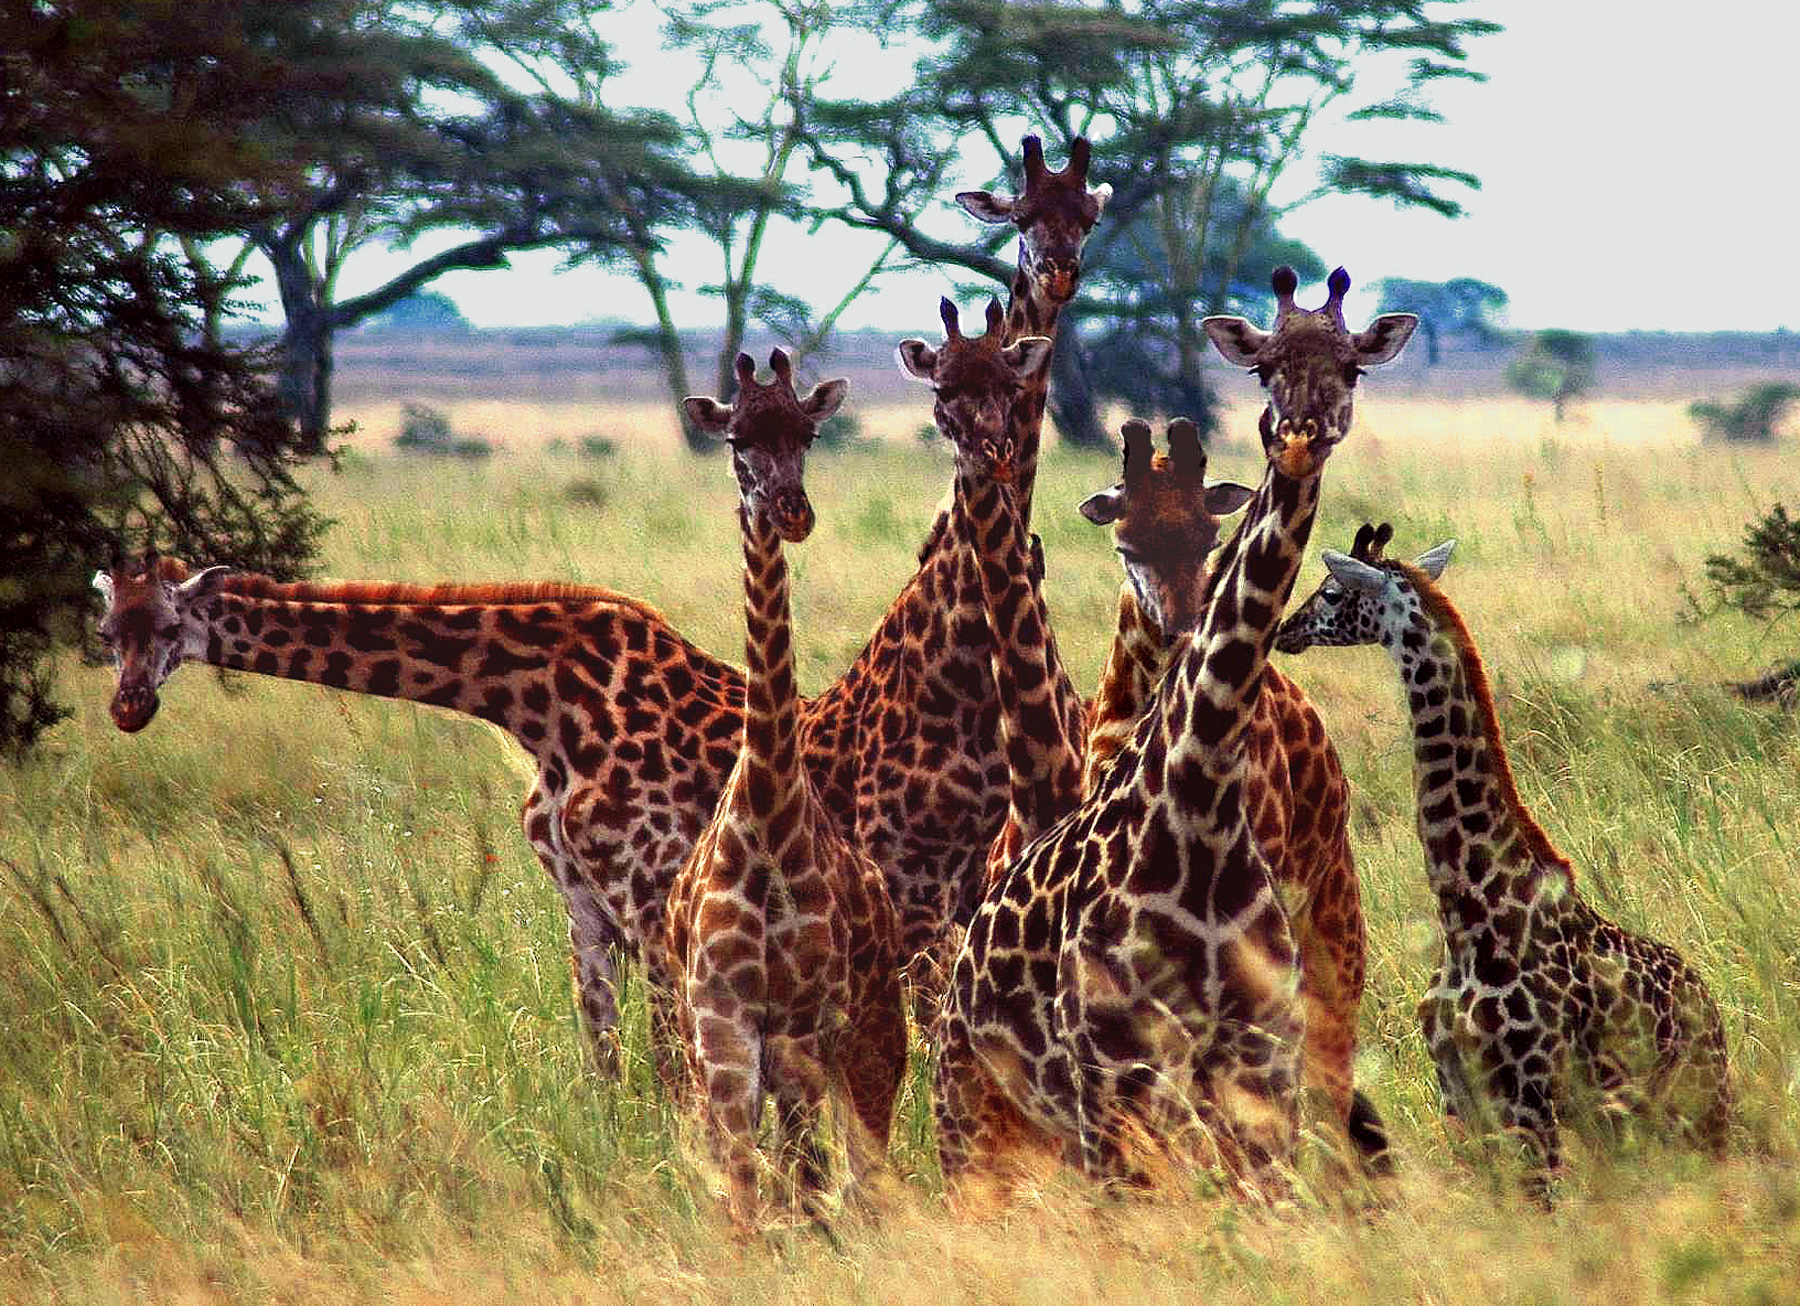 VT - 2004 - A25 - Serengeti - A24 - 7 Giraffes